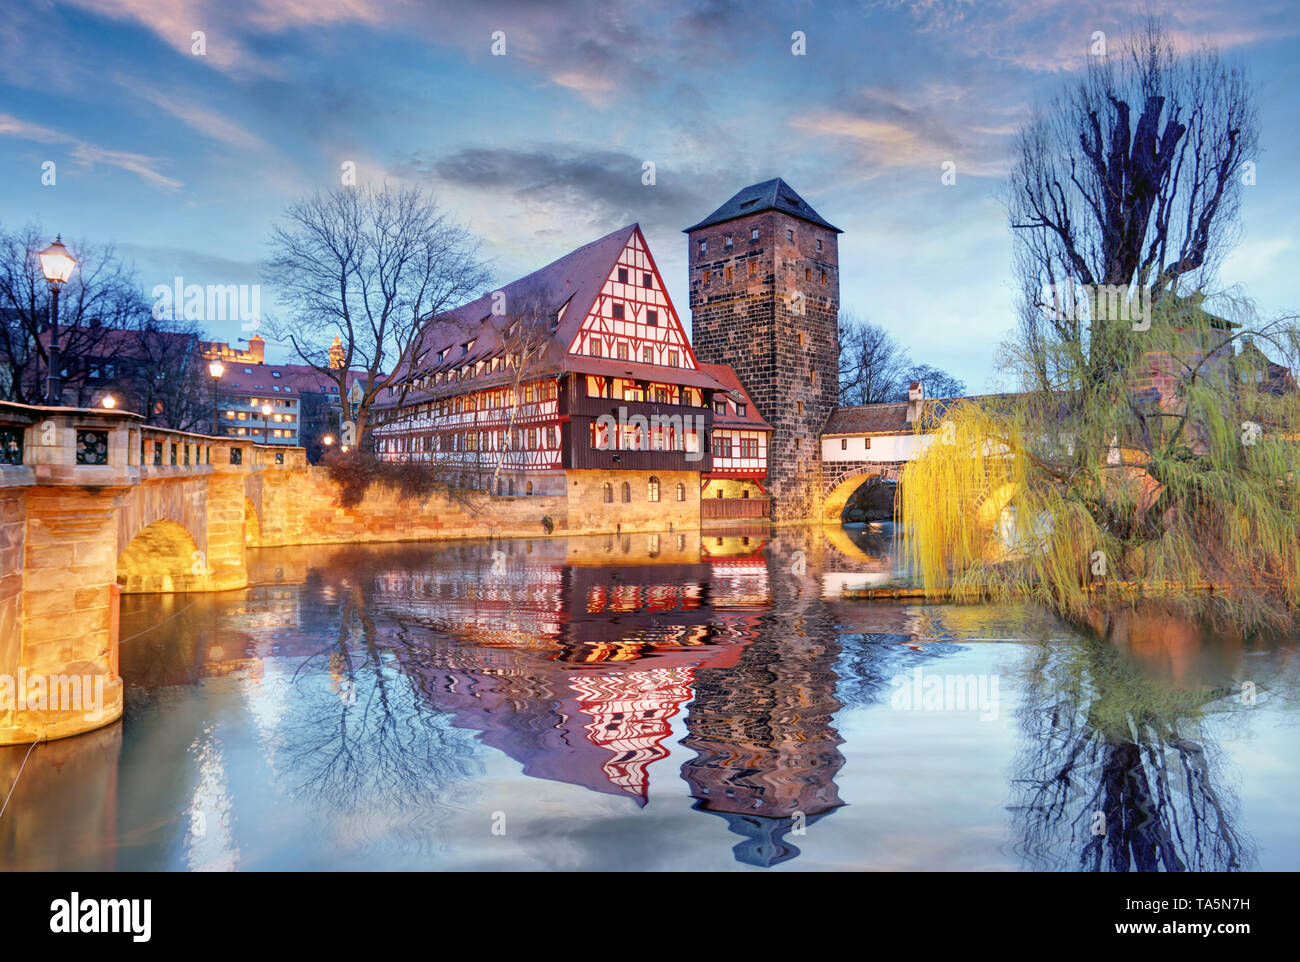 La ville de Nuremberg - Allemagne Banque D'Images